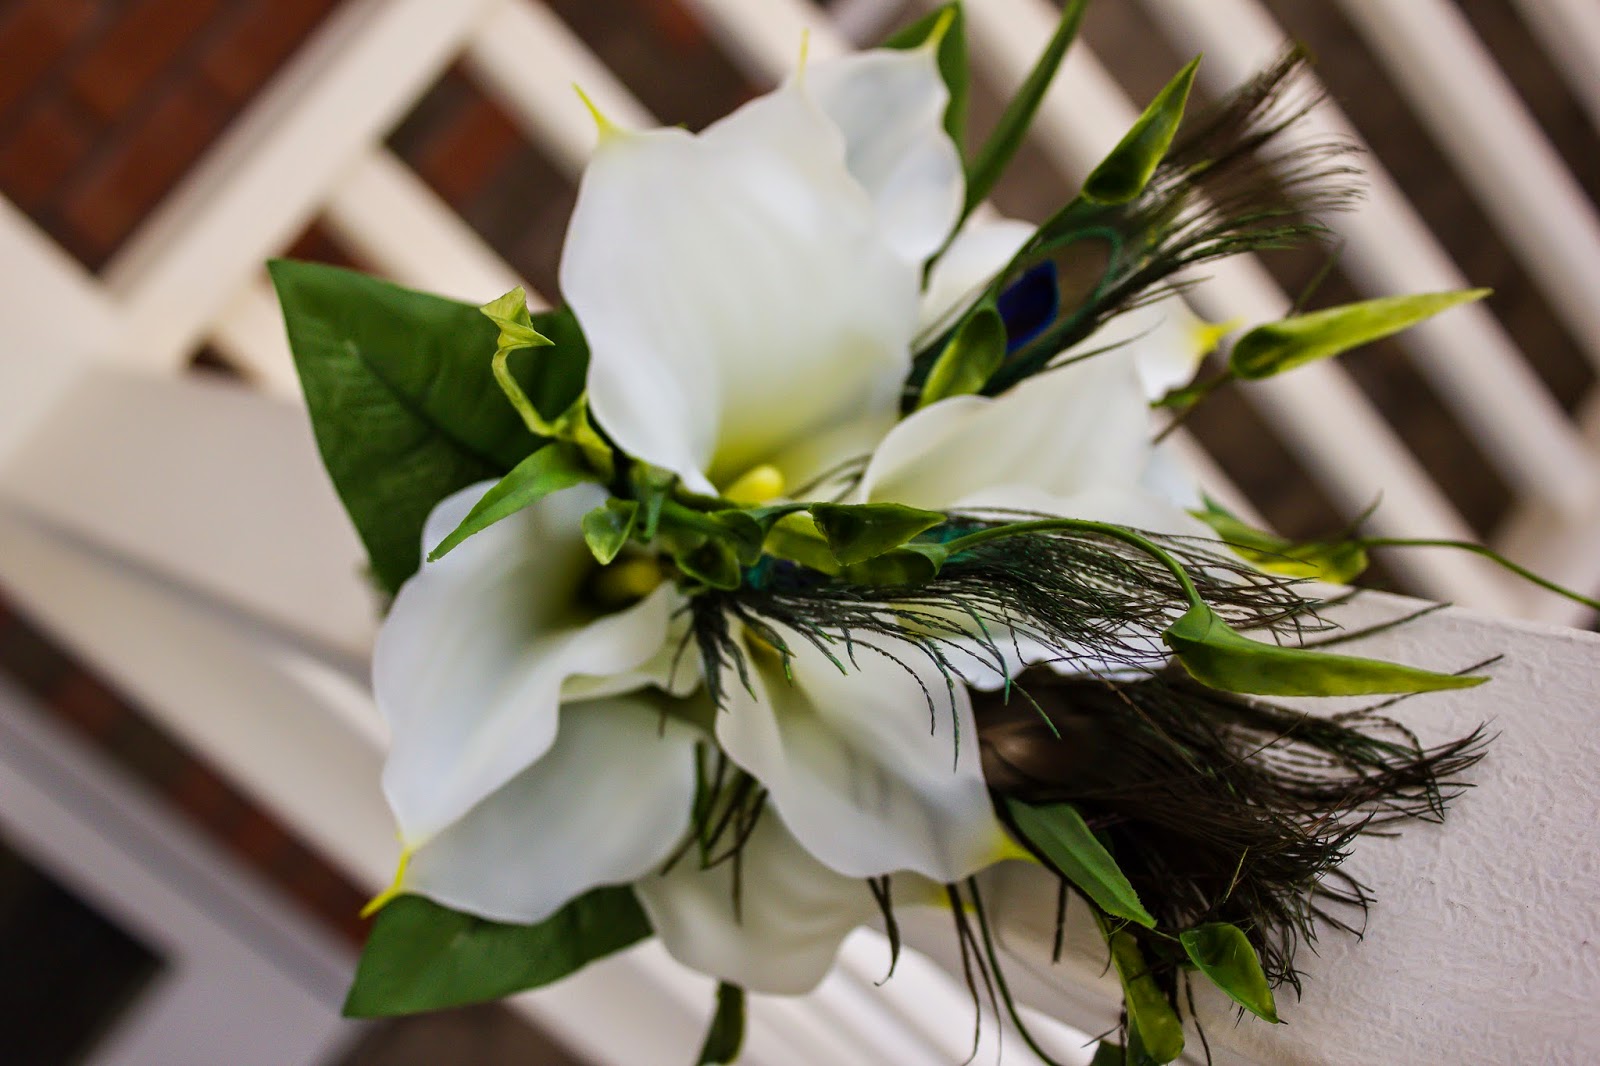 beginner lightroom, wedding bouquet, white wedding bouquet, white flowers at wedding, white balance, white balance in lightroom, wedding photography